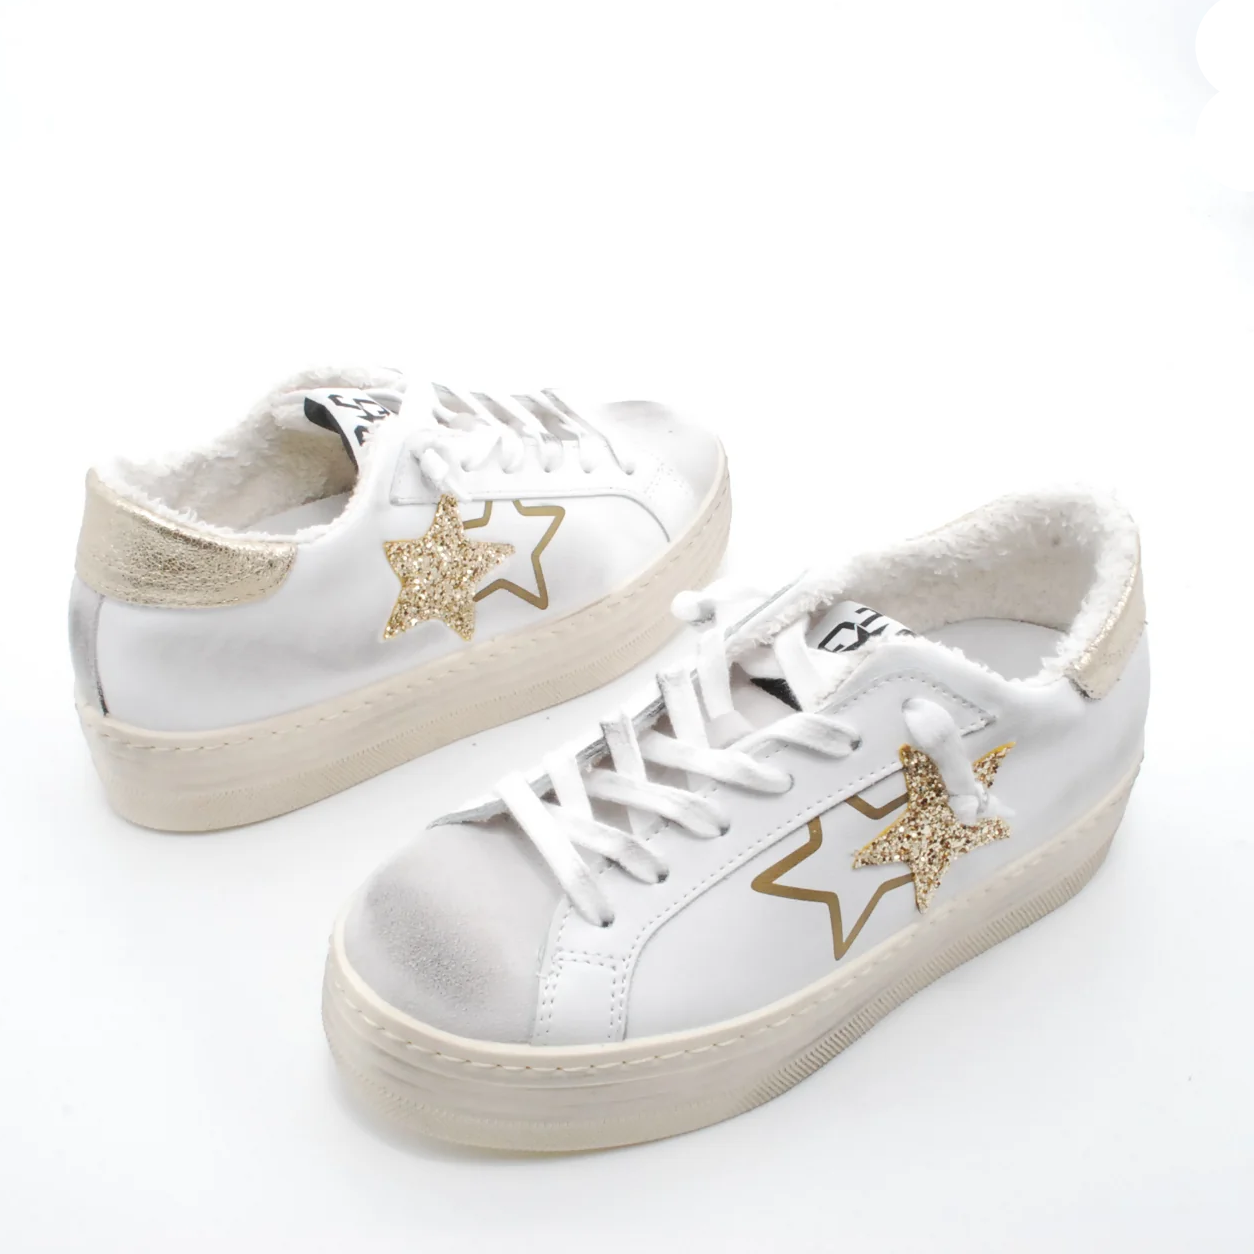 sneakers-2star-one-star-in-pelle-sneakers-10.png